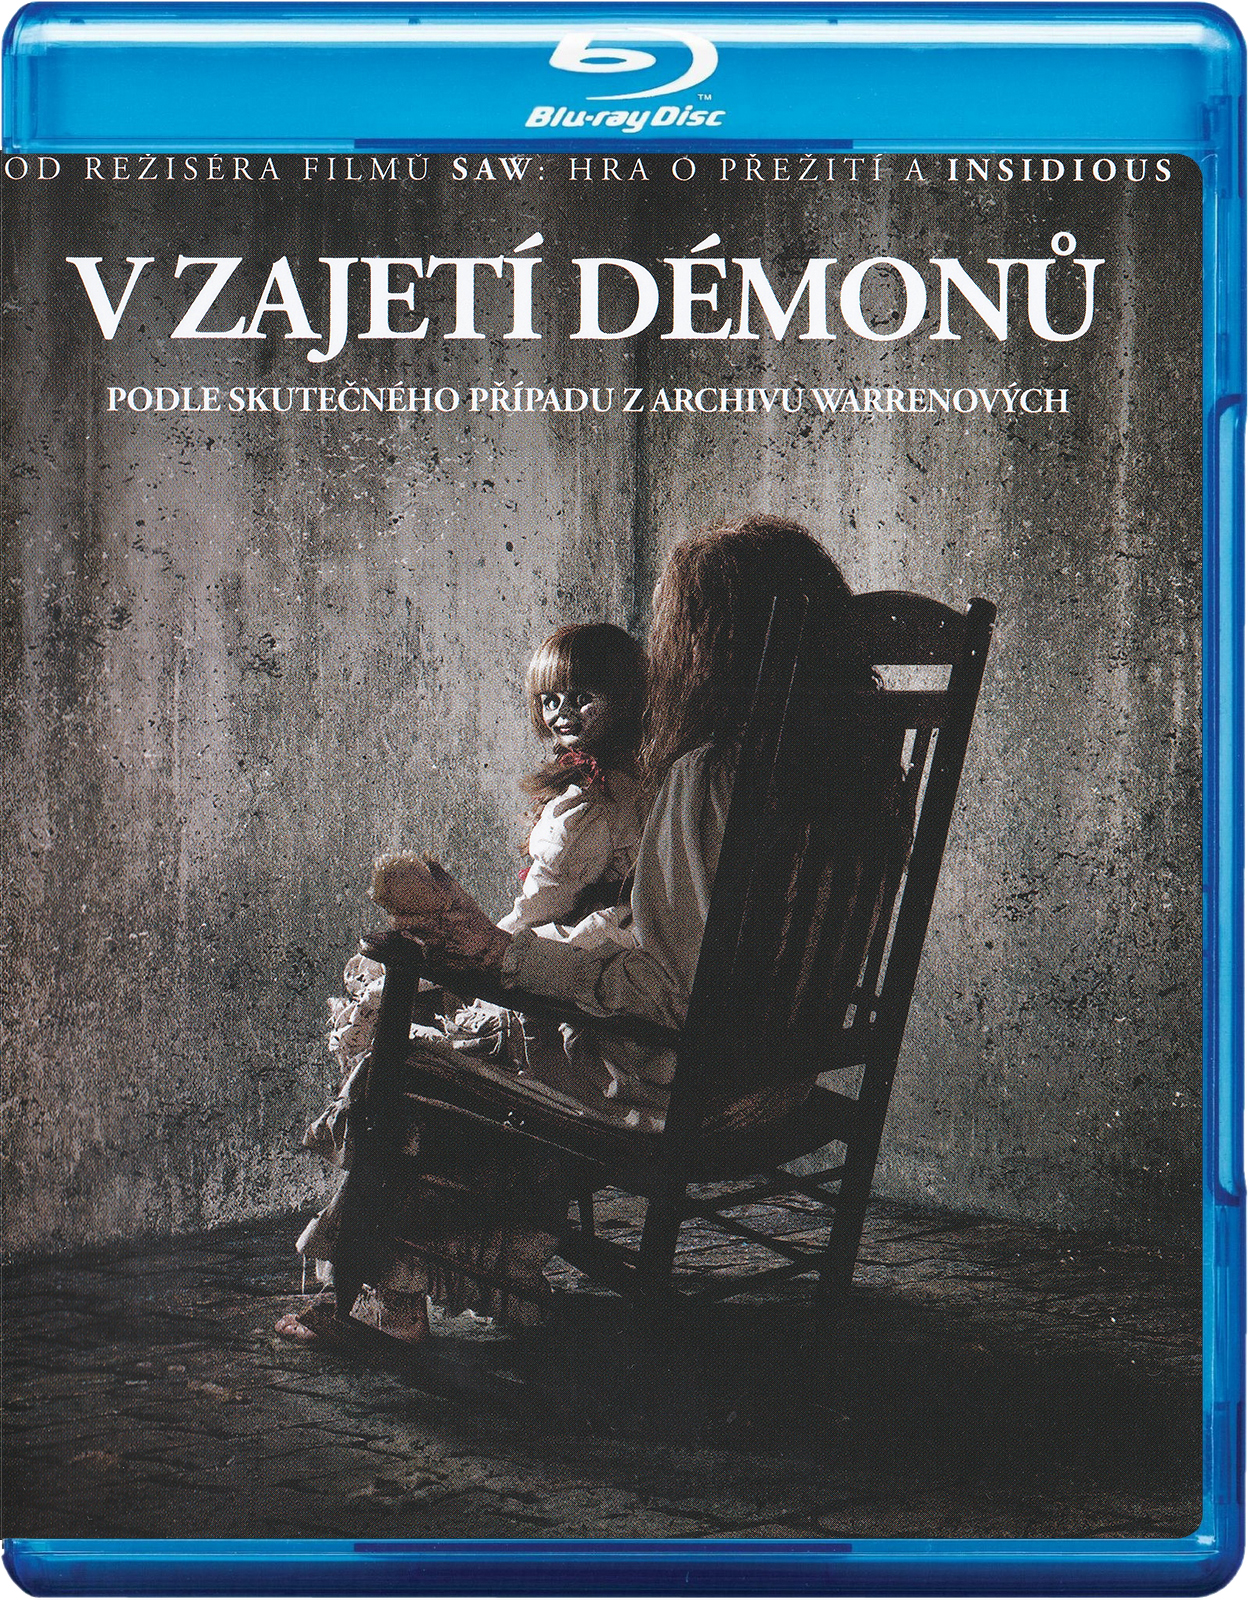 Stiahni si HD Filmy V zajeti demonu/The Conjuring (2013)(CZ/EN)[1080pHD] = CSFD 82%